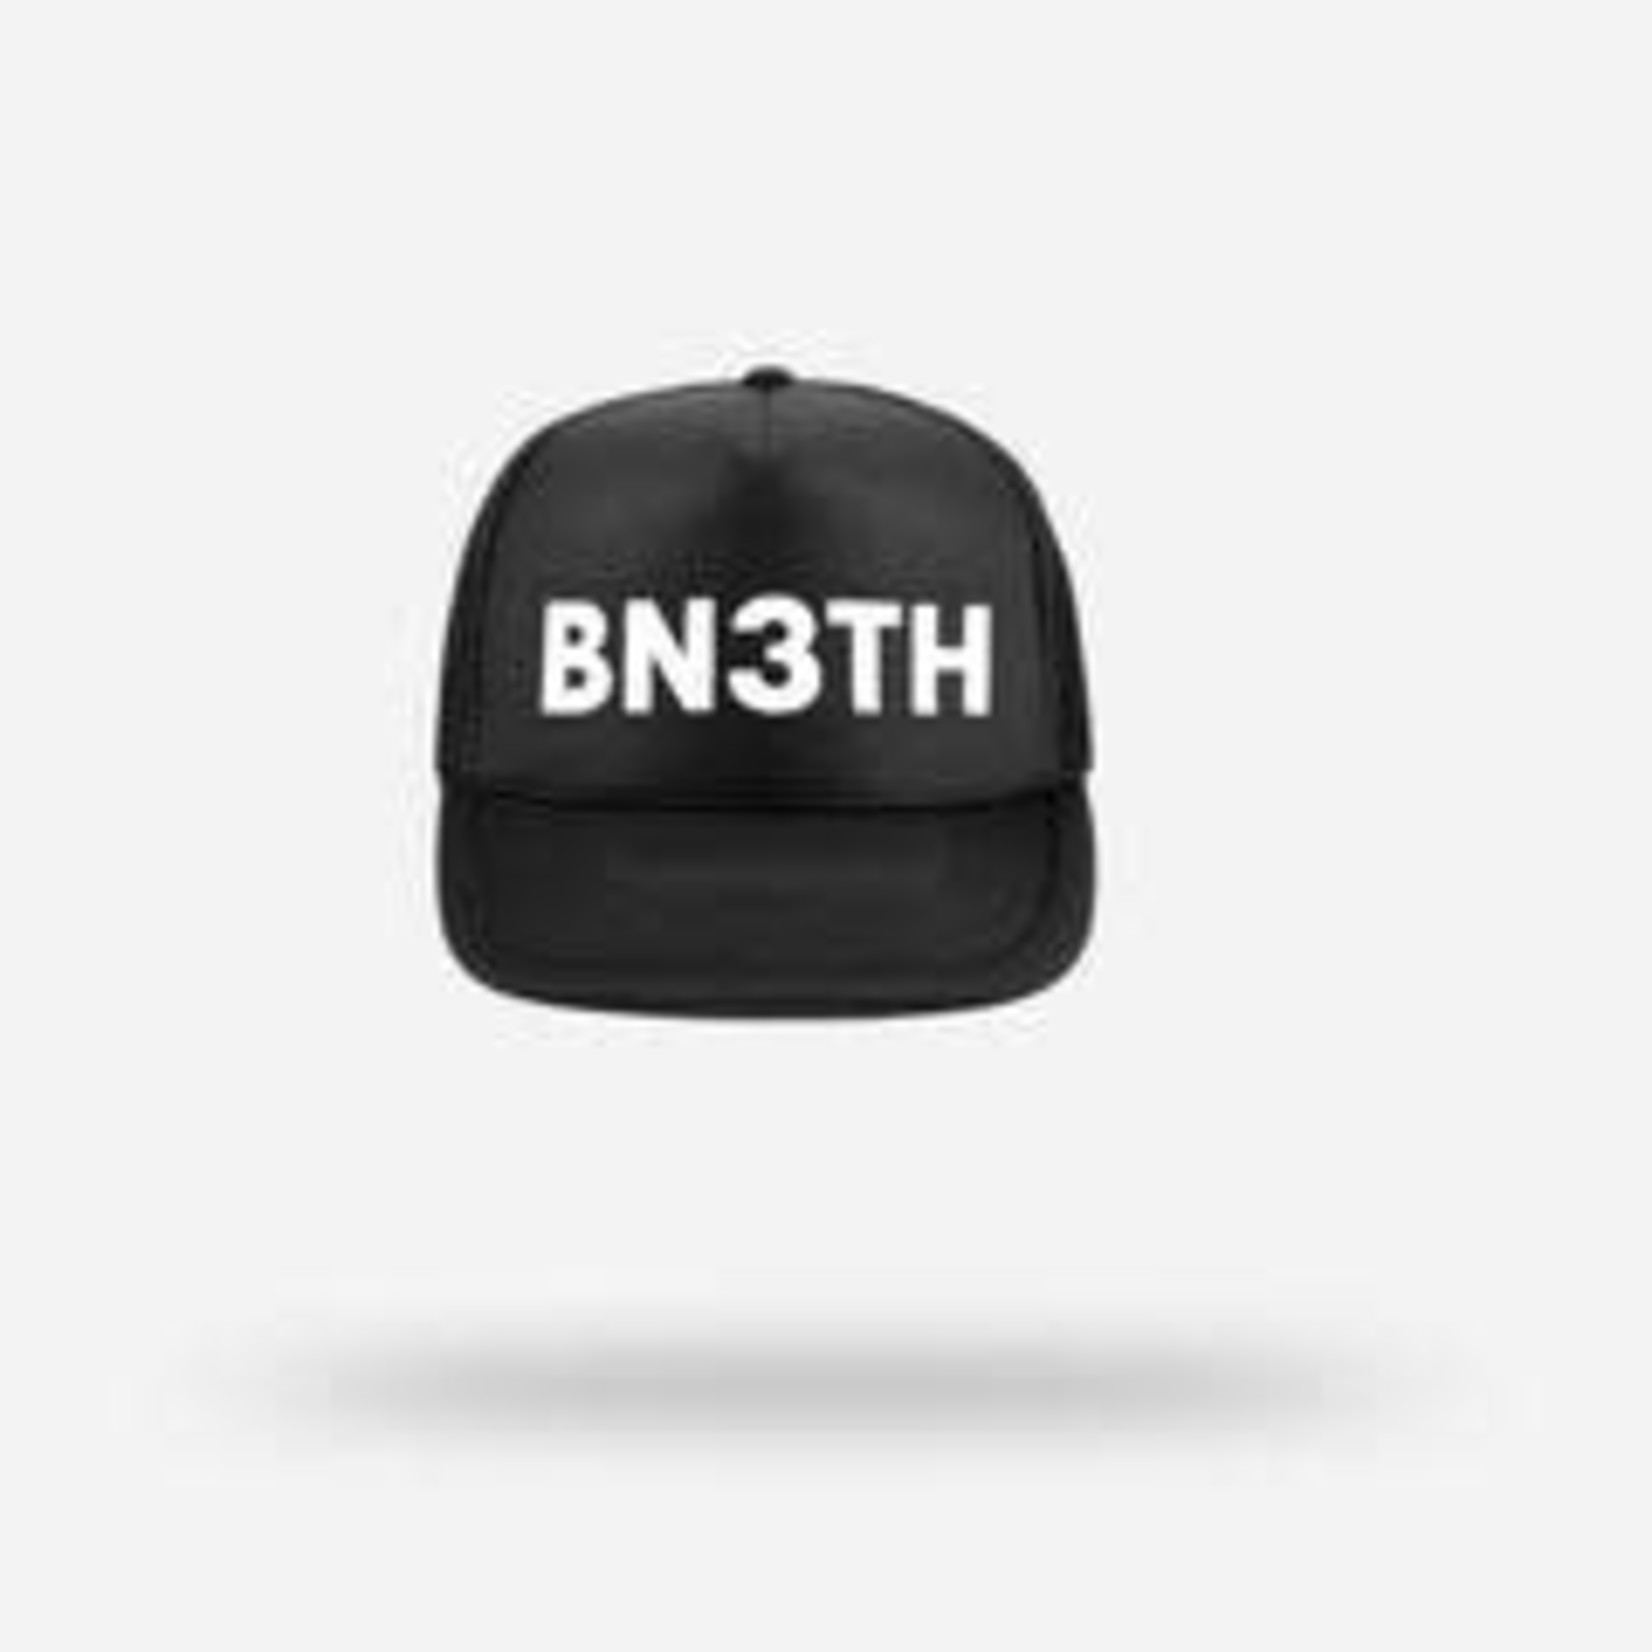 BN3TH Bn3th Baseball Cap